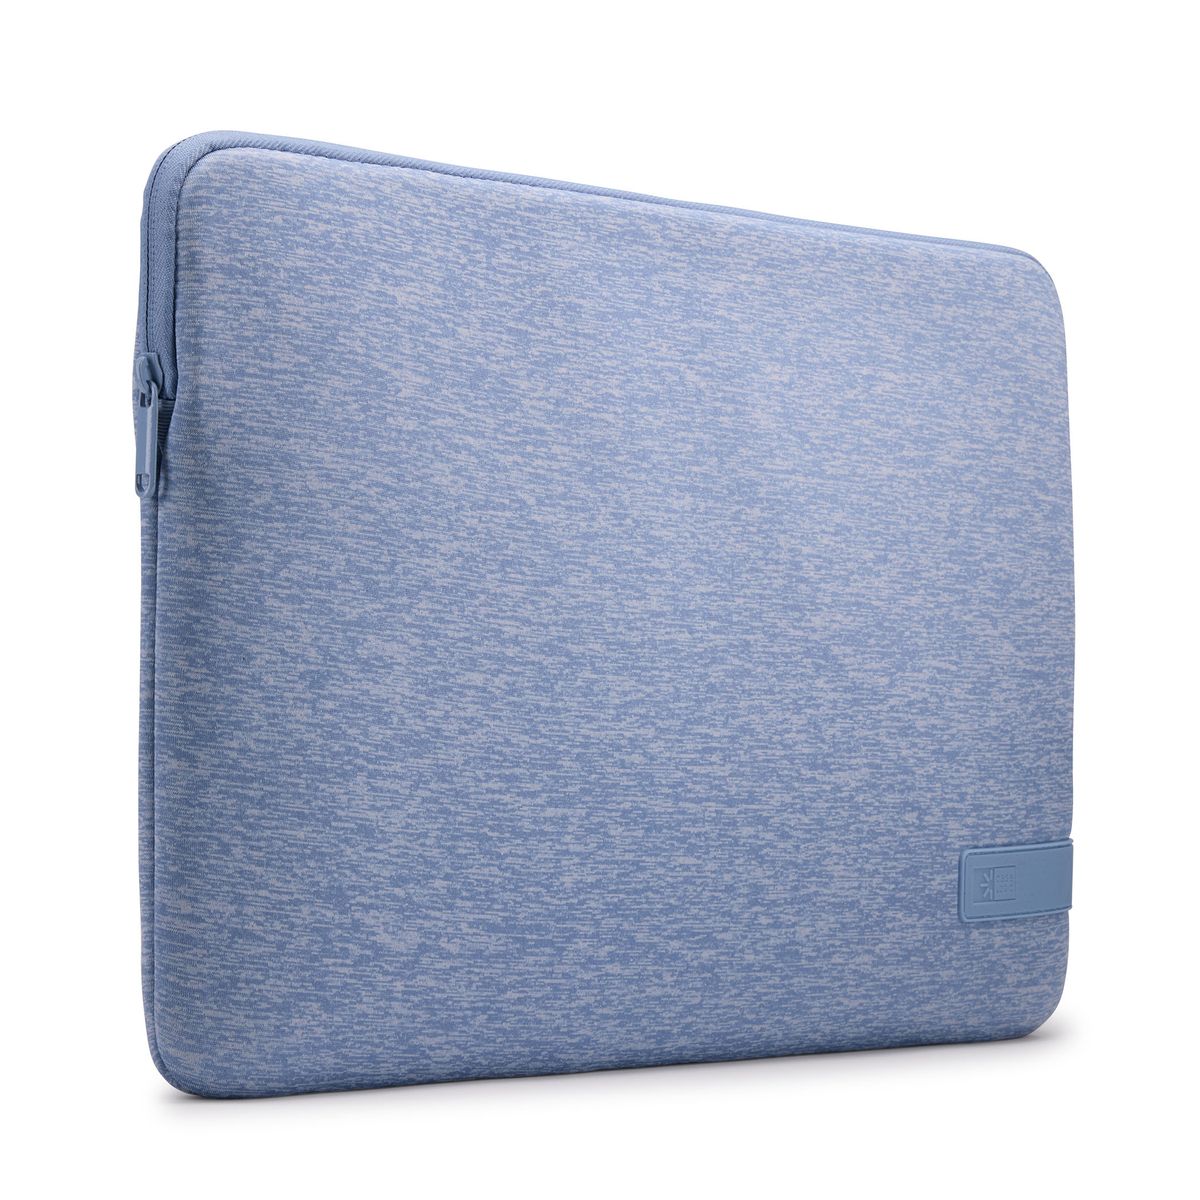 Case Logic Reflect Laptop Sleeve 15.6" laptop sleeve